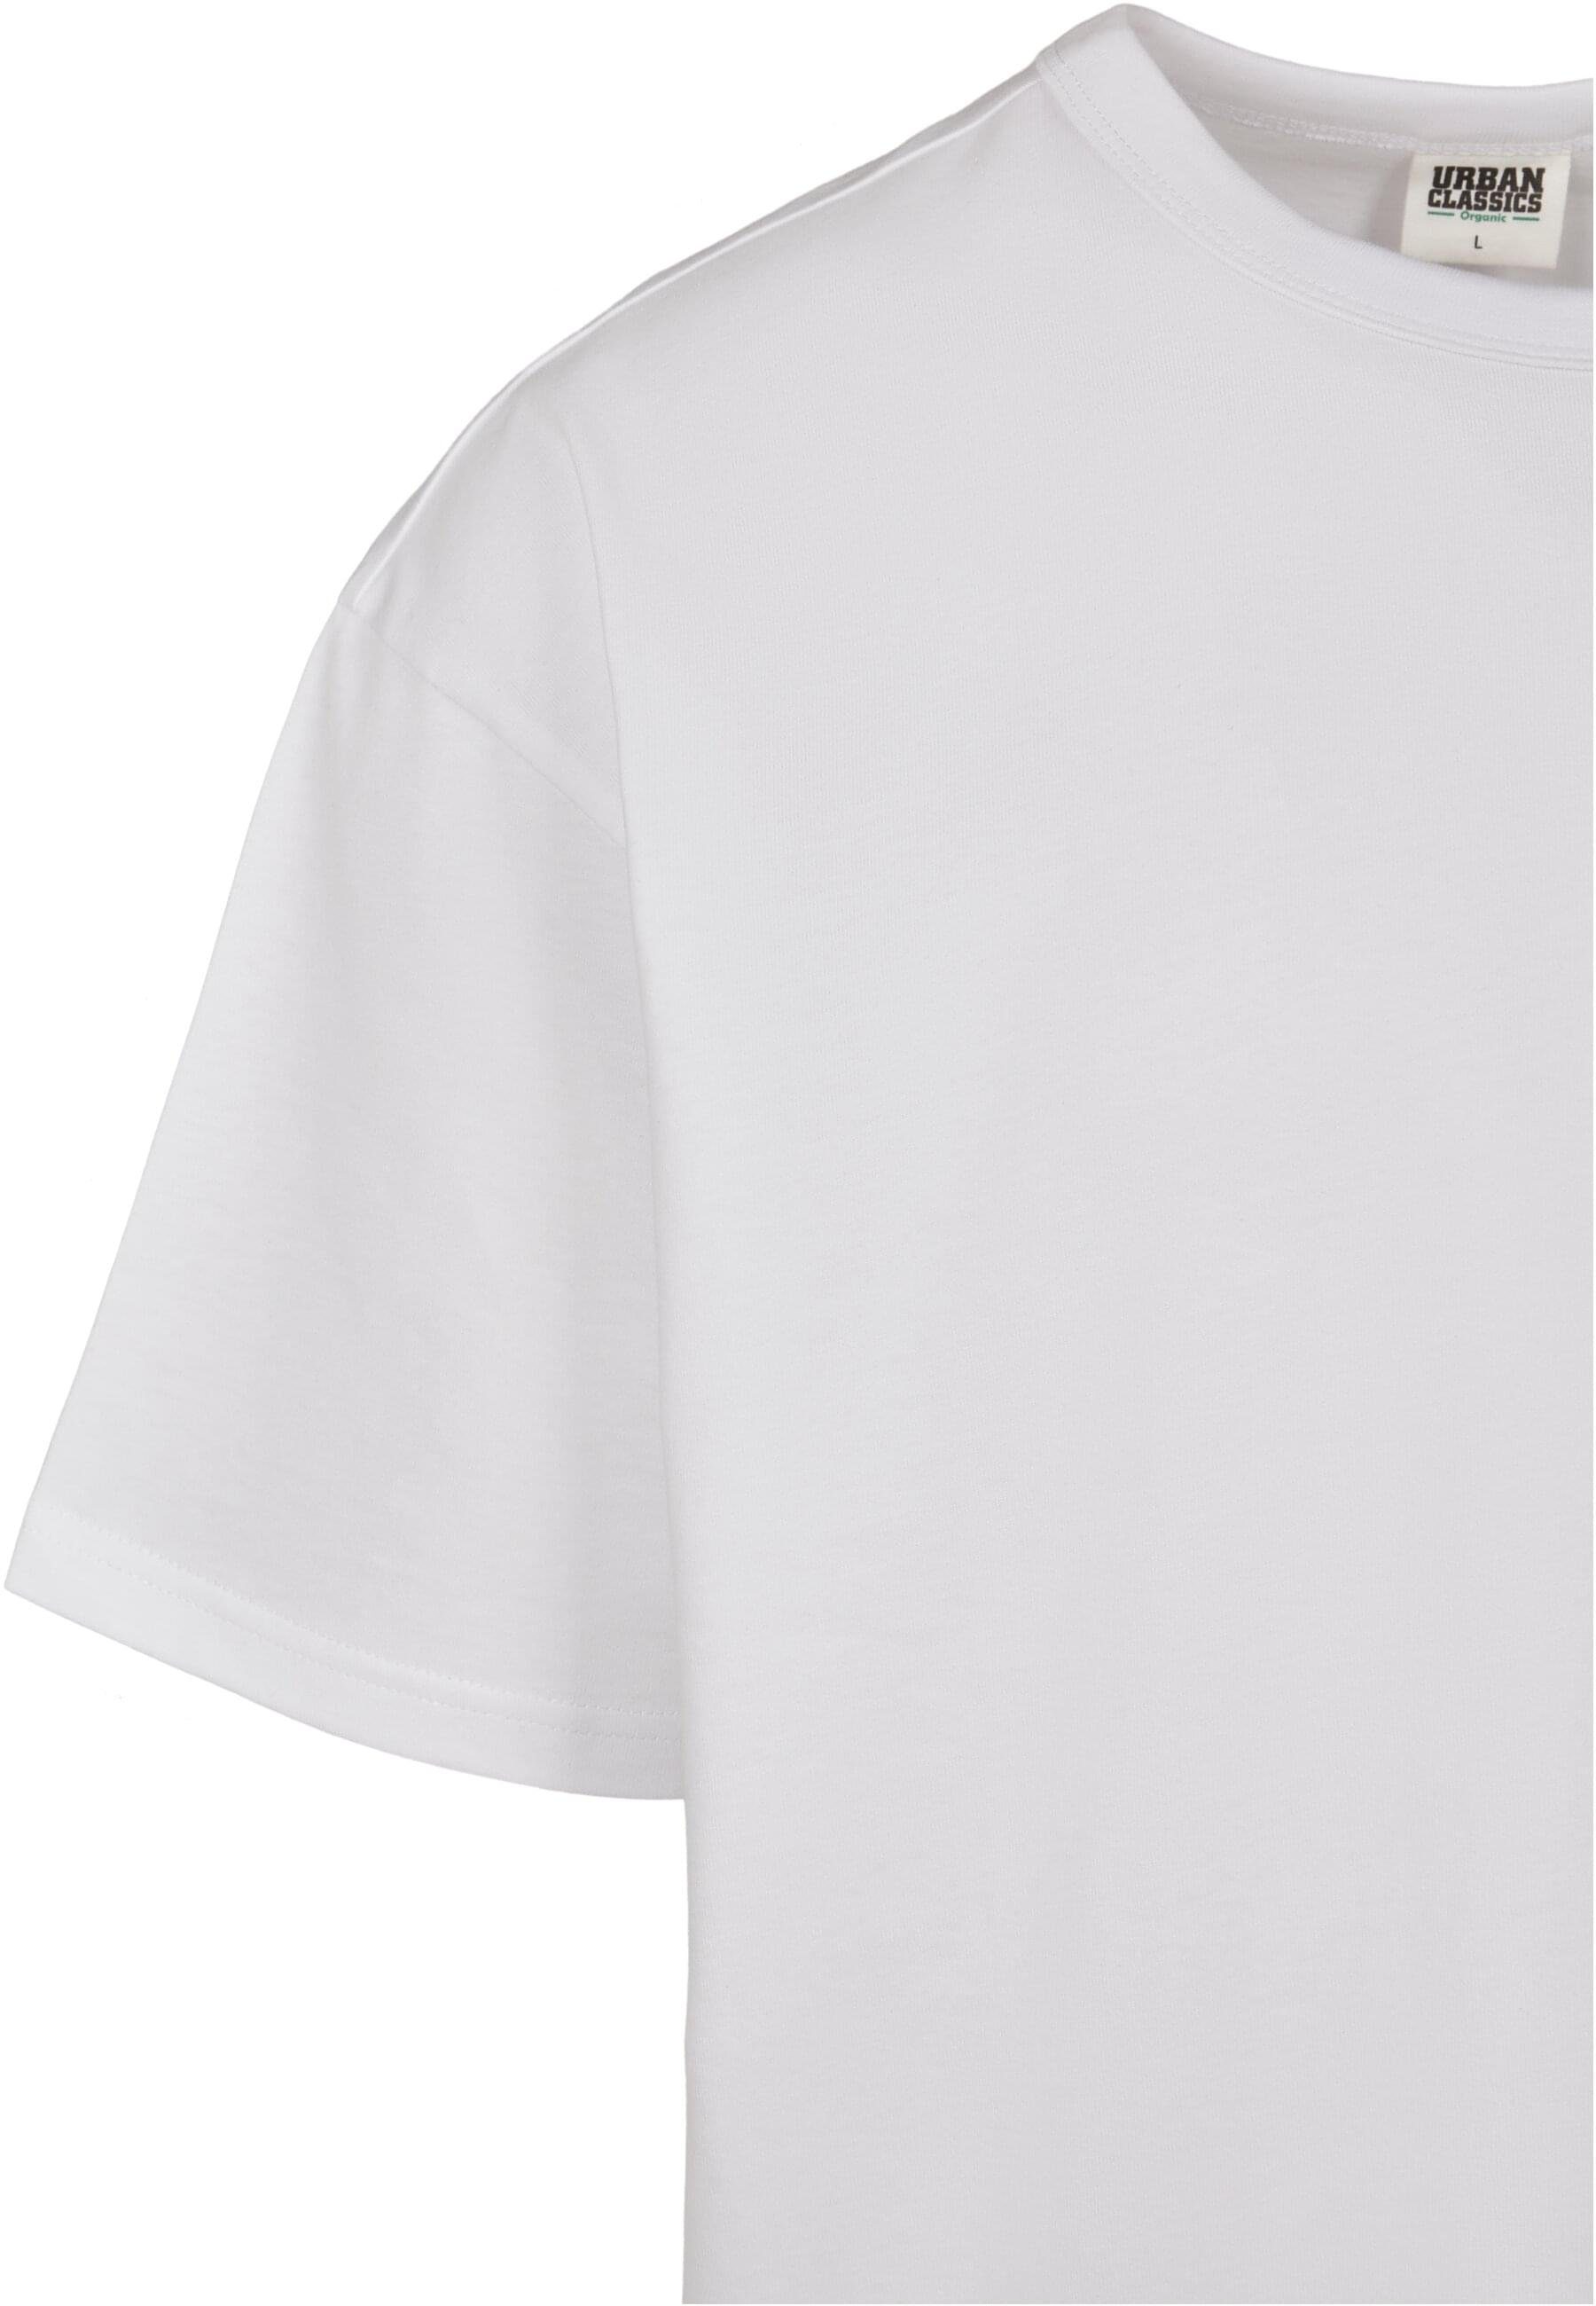 URBAN CLASSICS T-Shirt Herren Tee (1-tlg) Basic white Organic